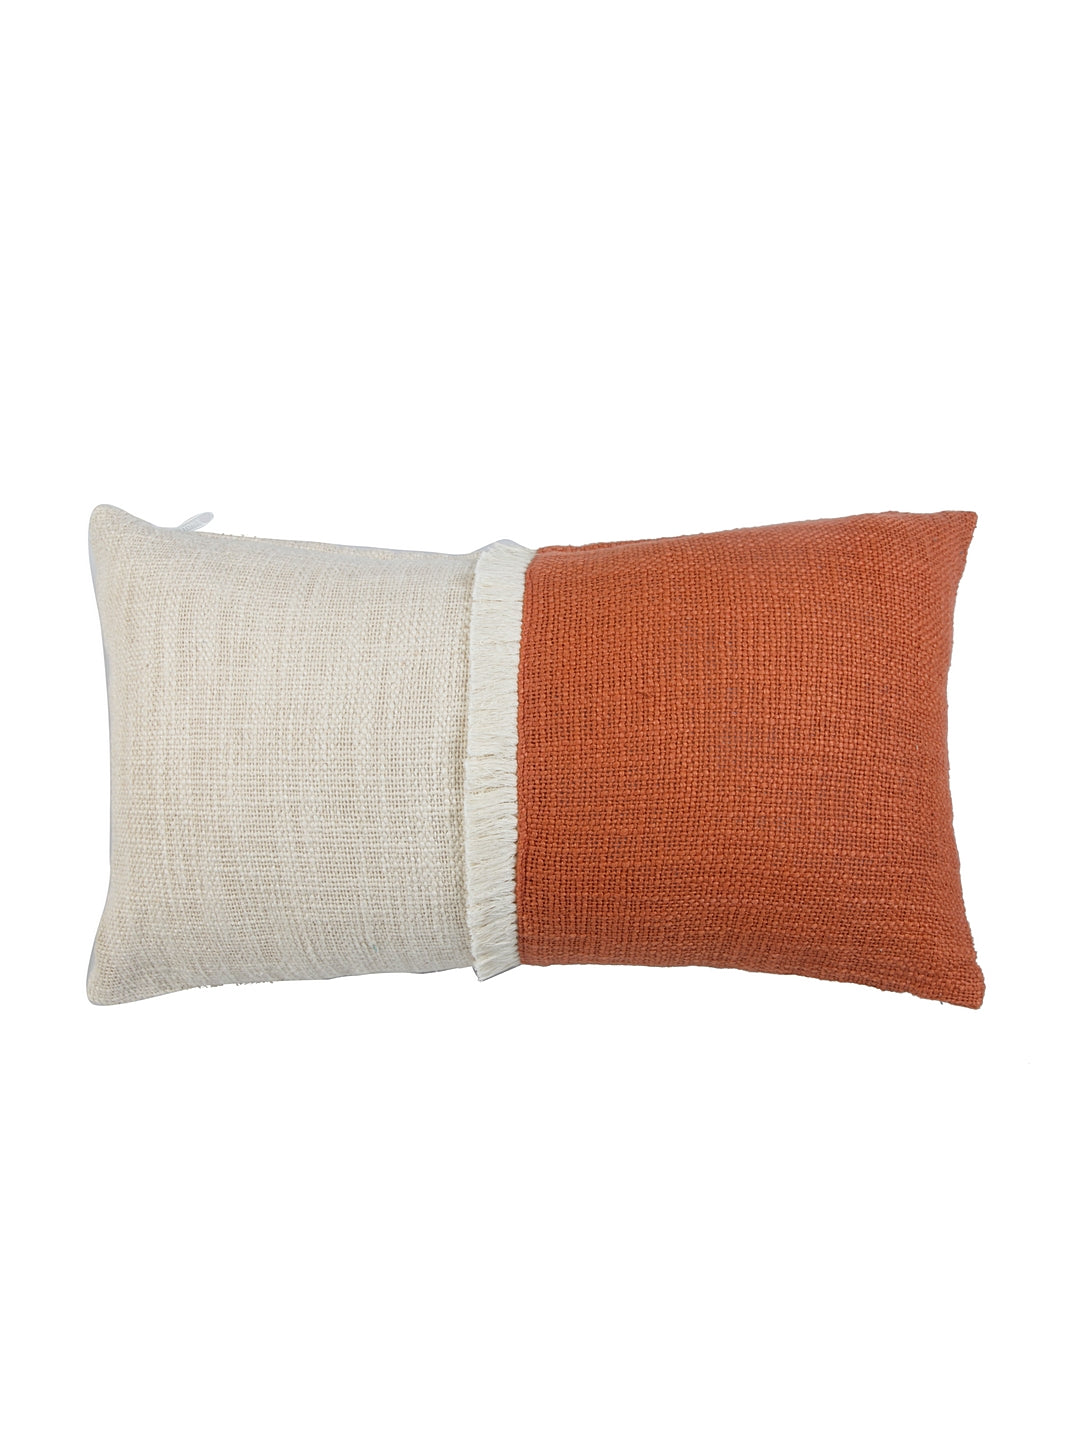 Terracotta Natural Cushion Cover 30x50cm